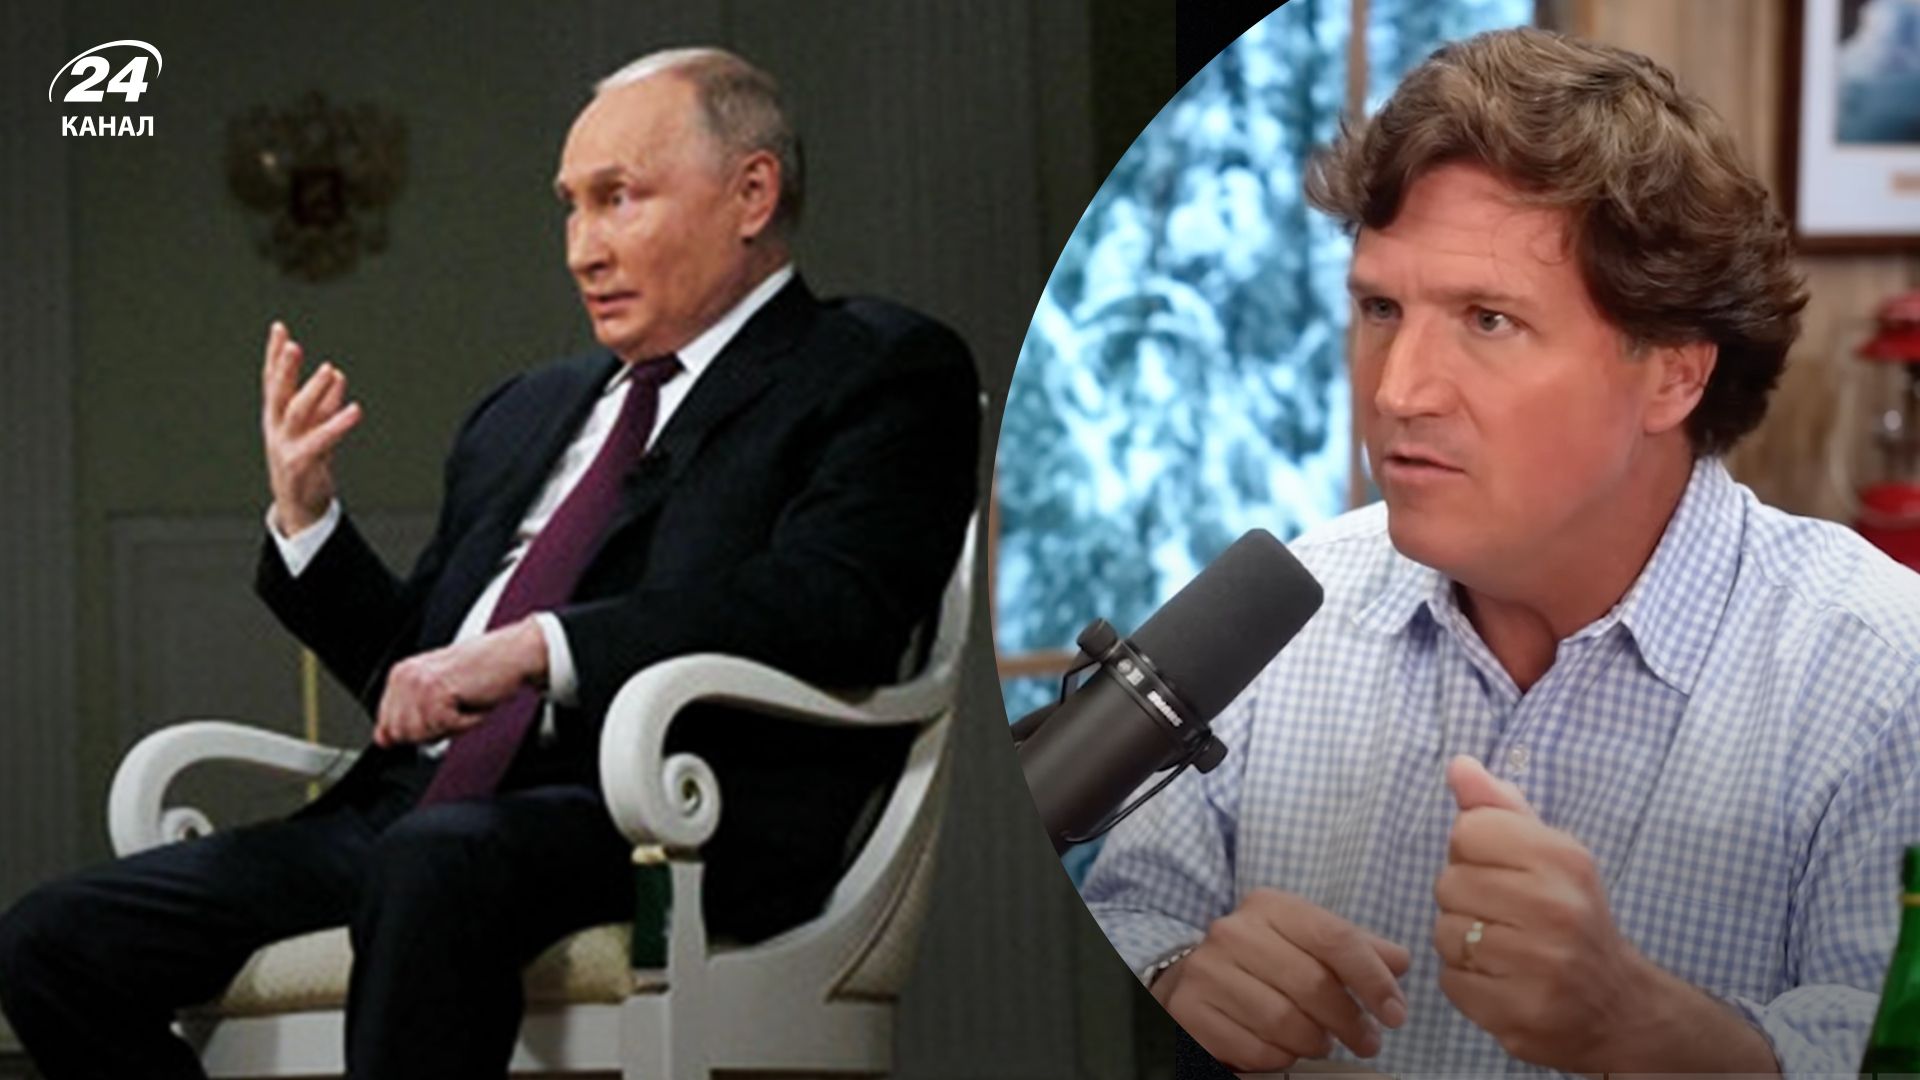 Карлсон розкритикував Путіна за "денацифікацію", про яку той говорив в інтерв'ю